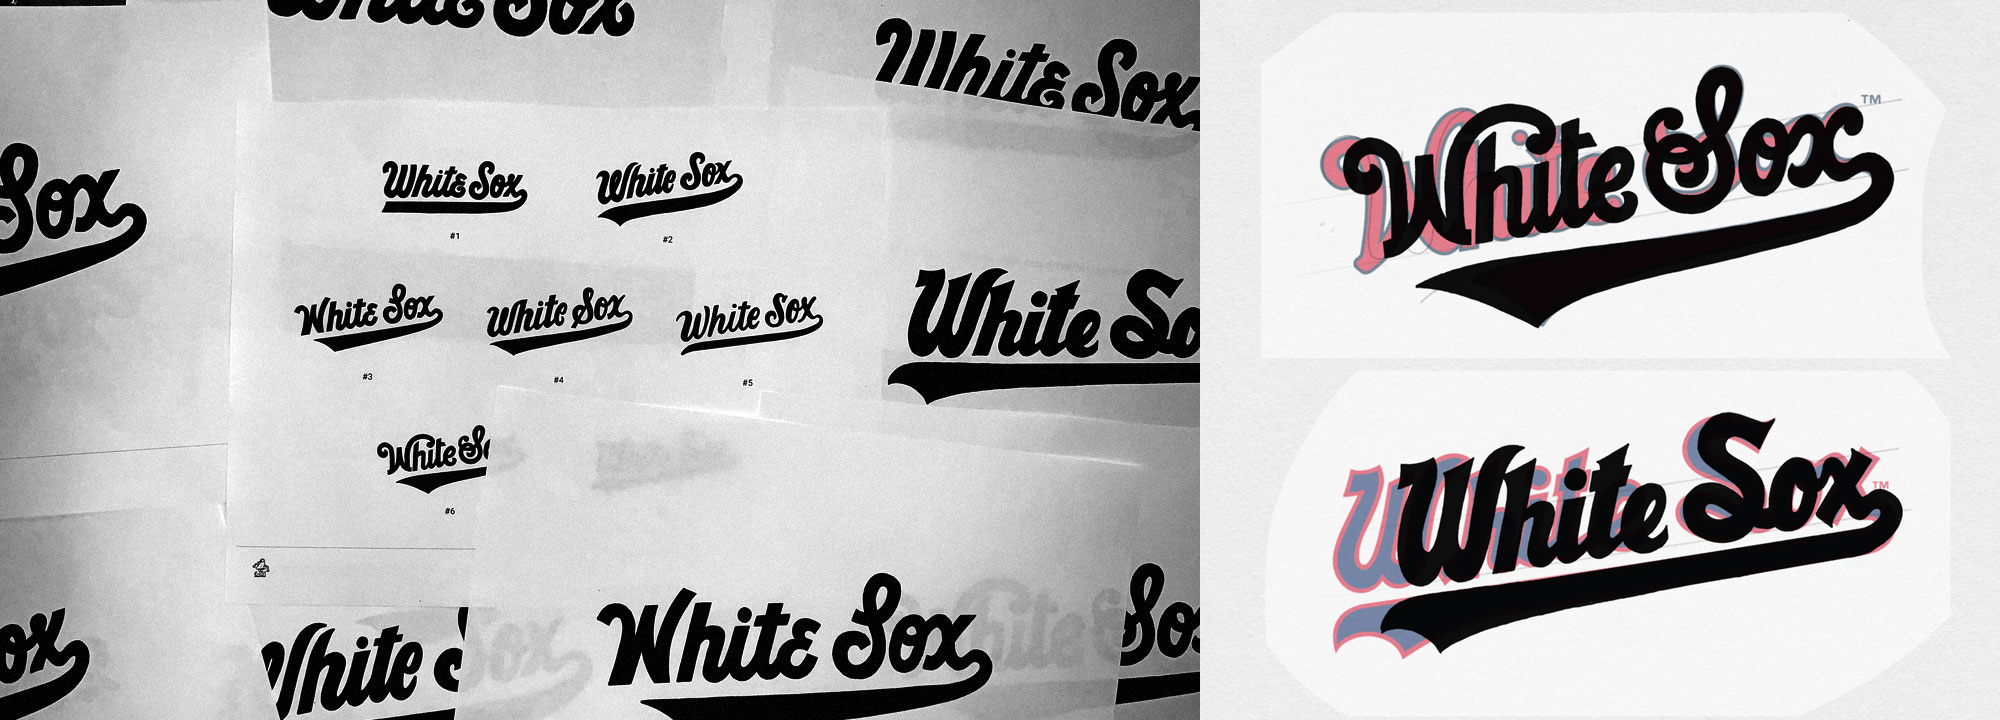 Chicago White Sox - CONTINO